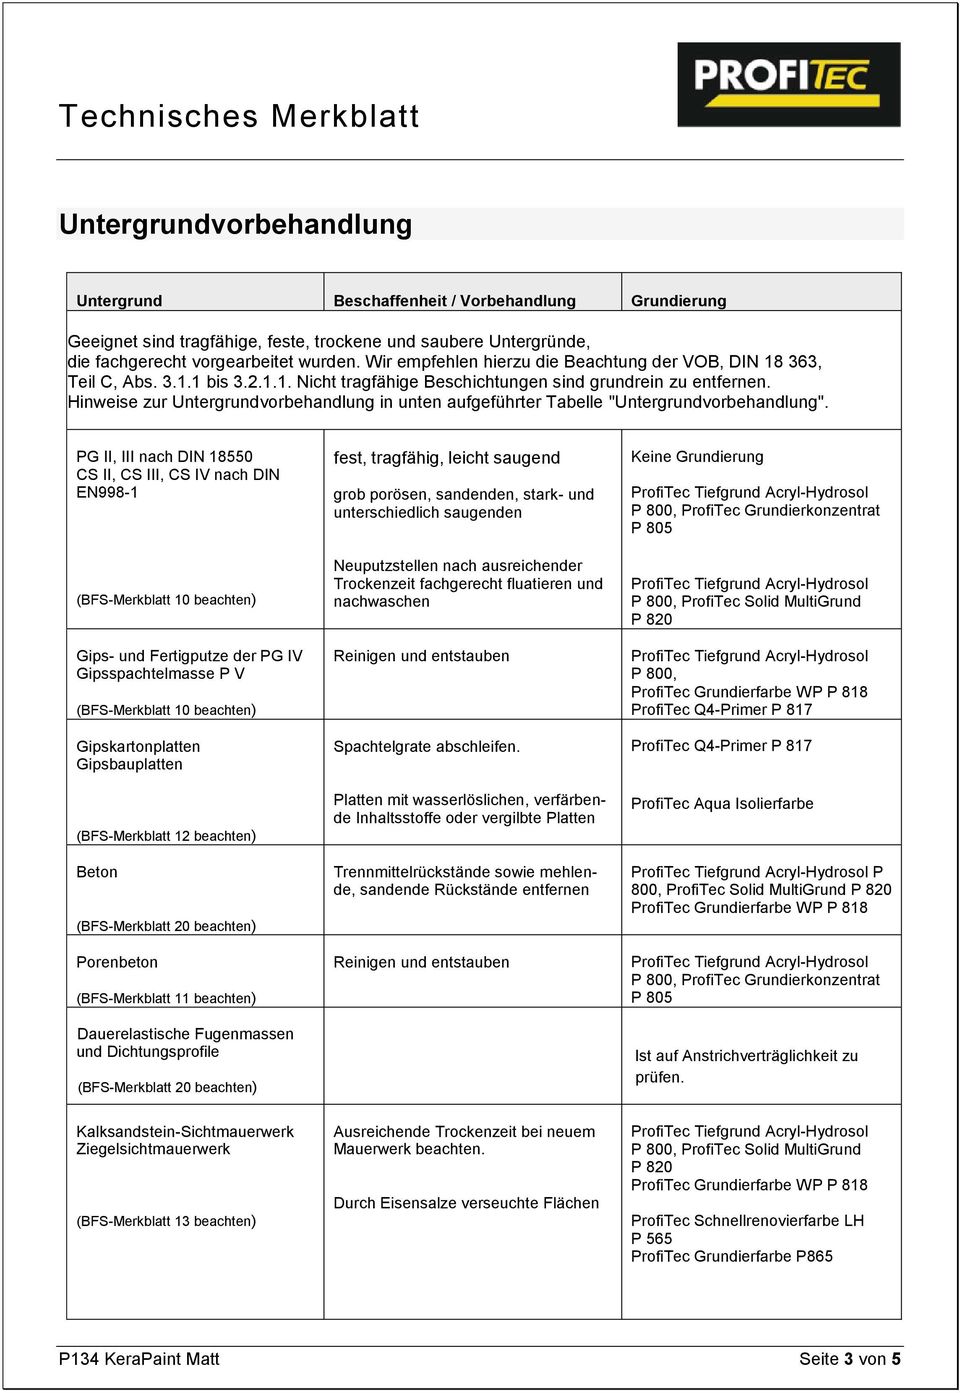 Hinweise zur Untergrundvorbehandlung in unten aufgeführter Tabelle "Untergrundvorbehandlung".